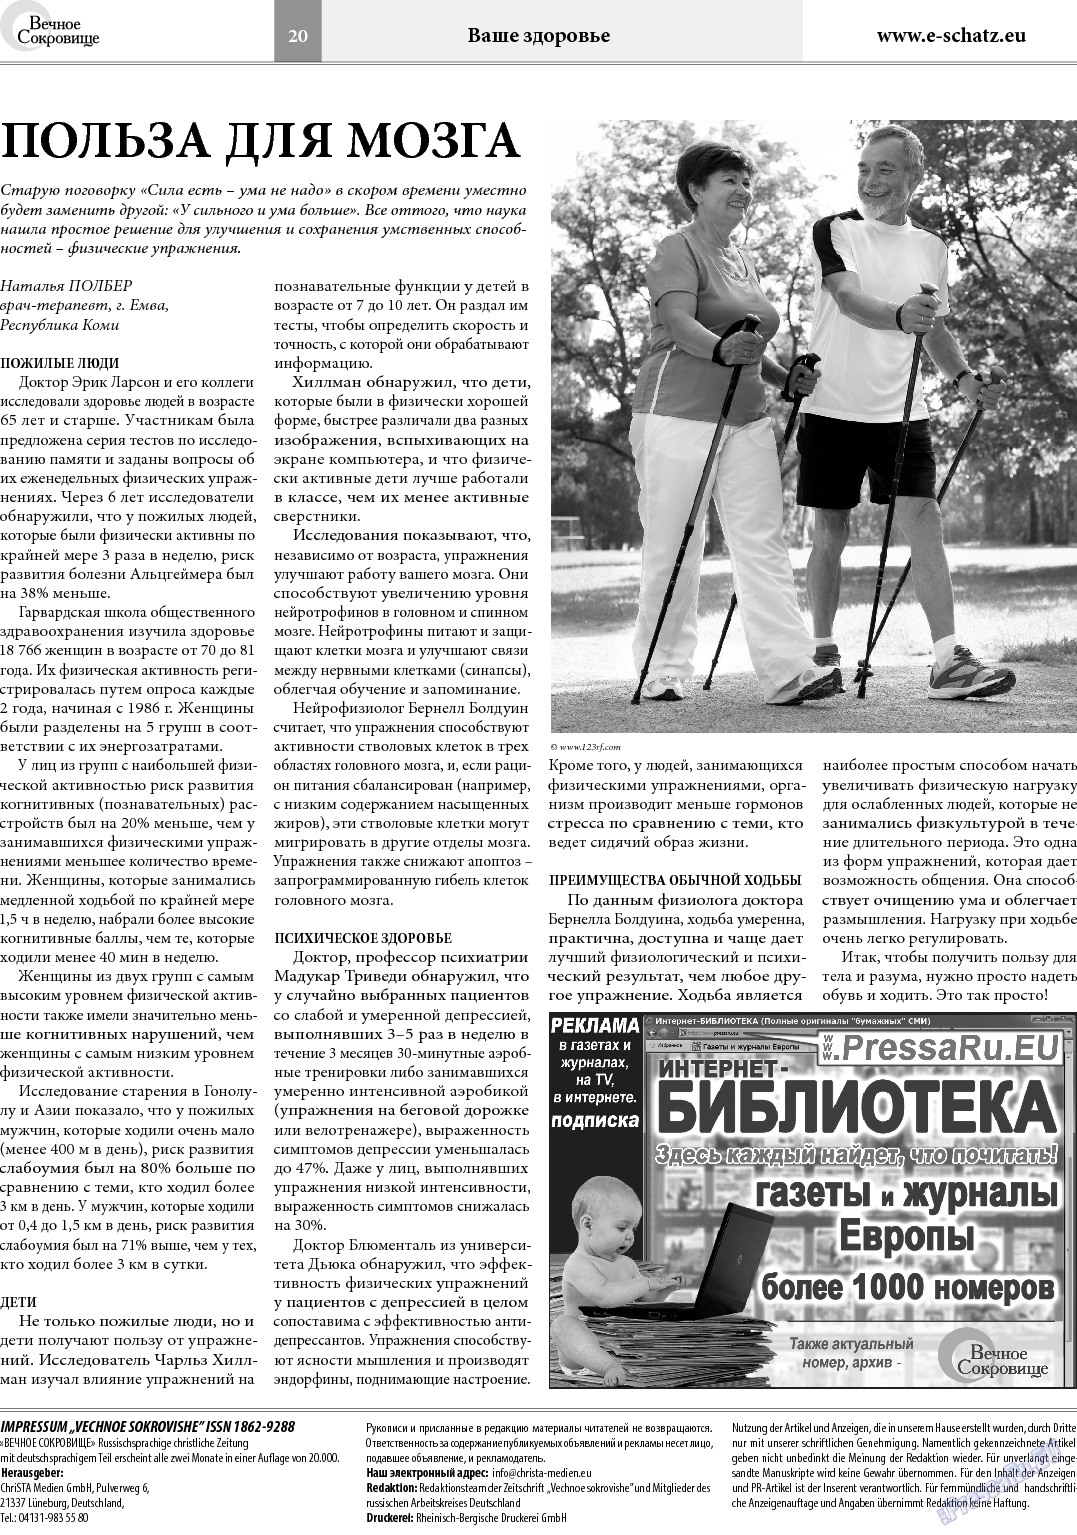 Вечное сокровище (газета). 2014 год, номер 1, стр. 20